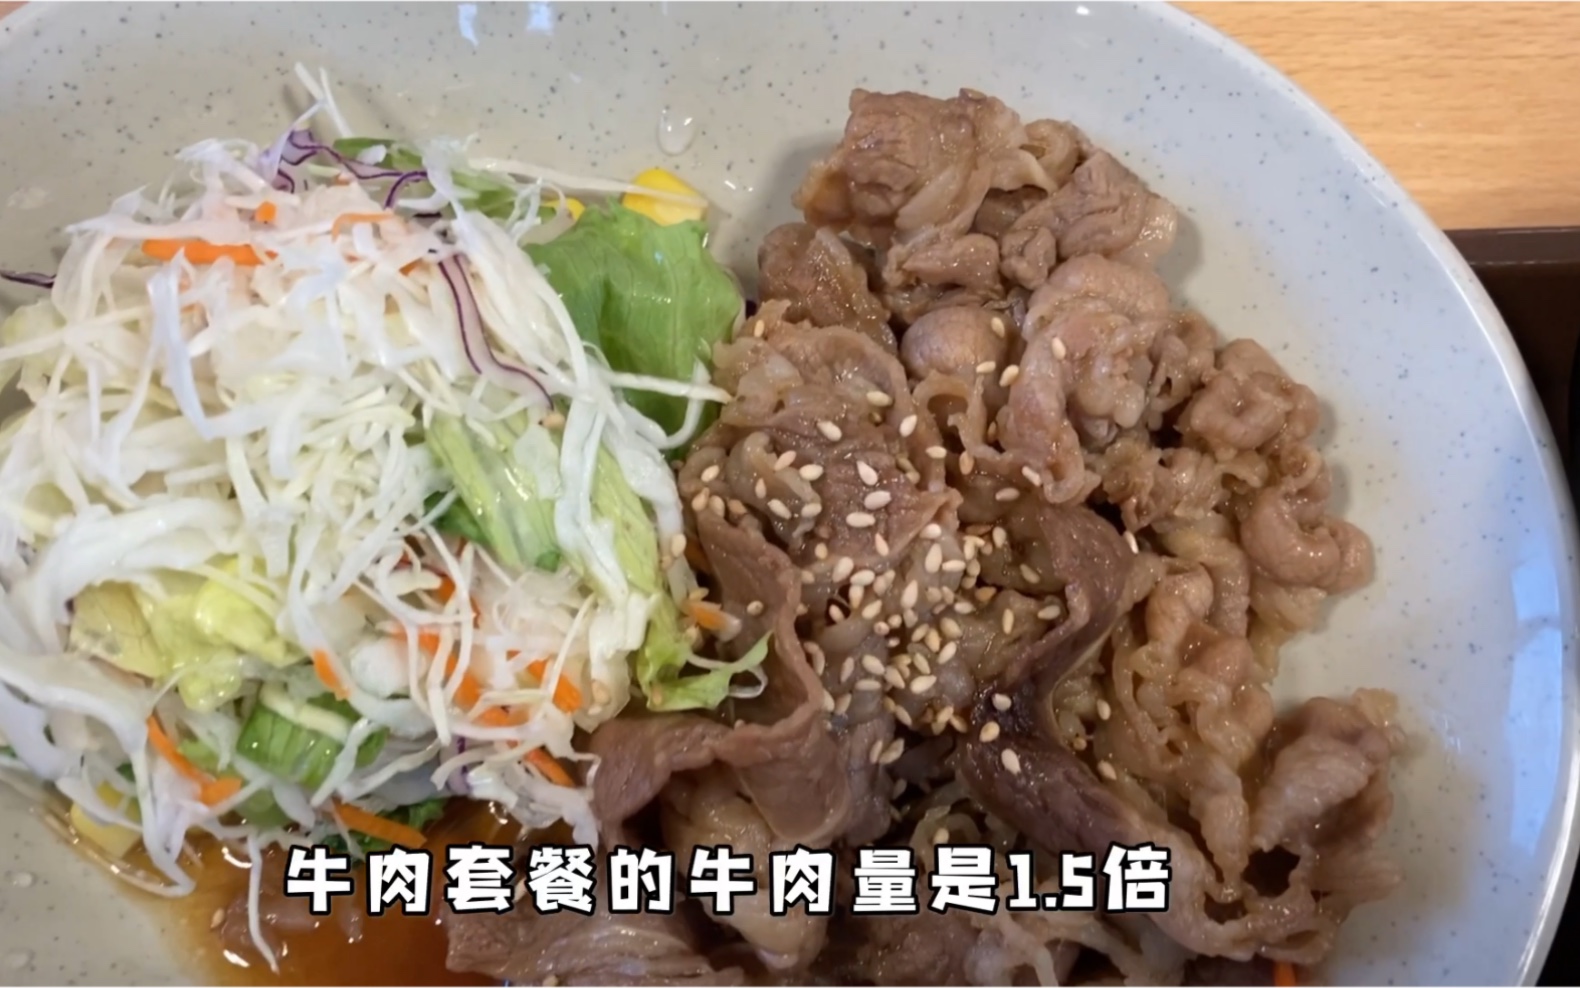 日本三大快餐之一的すき家、800日元的牛肉定食，味道简直不要不要的